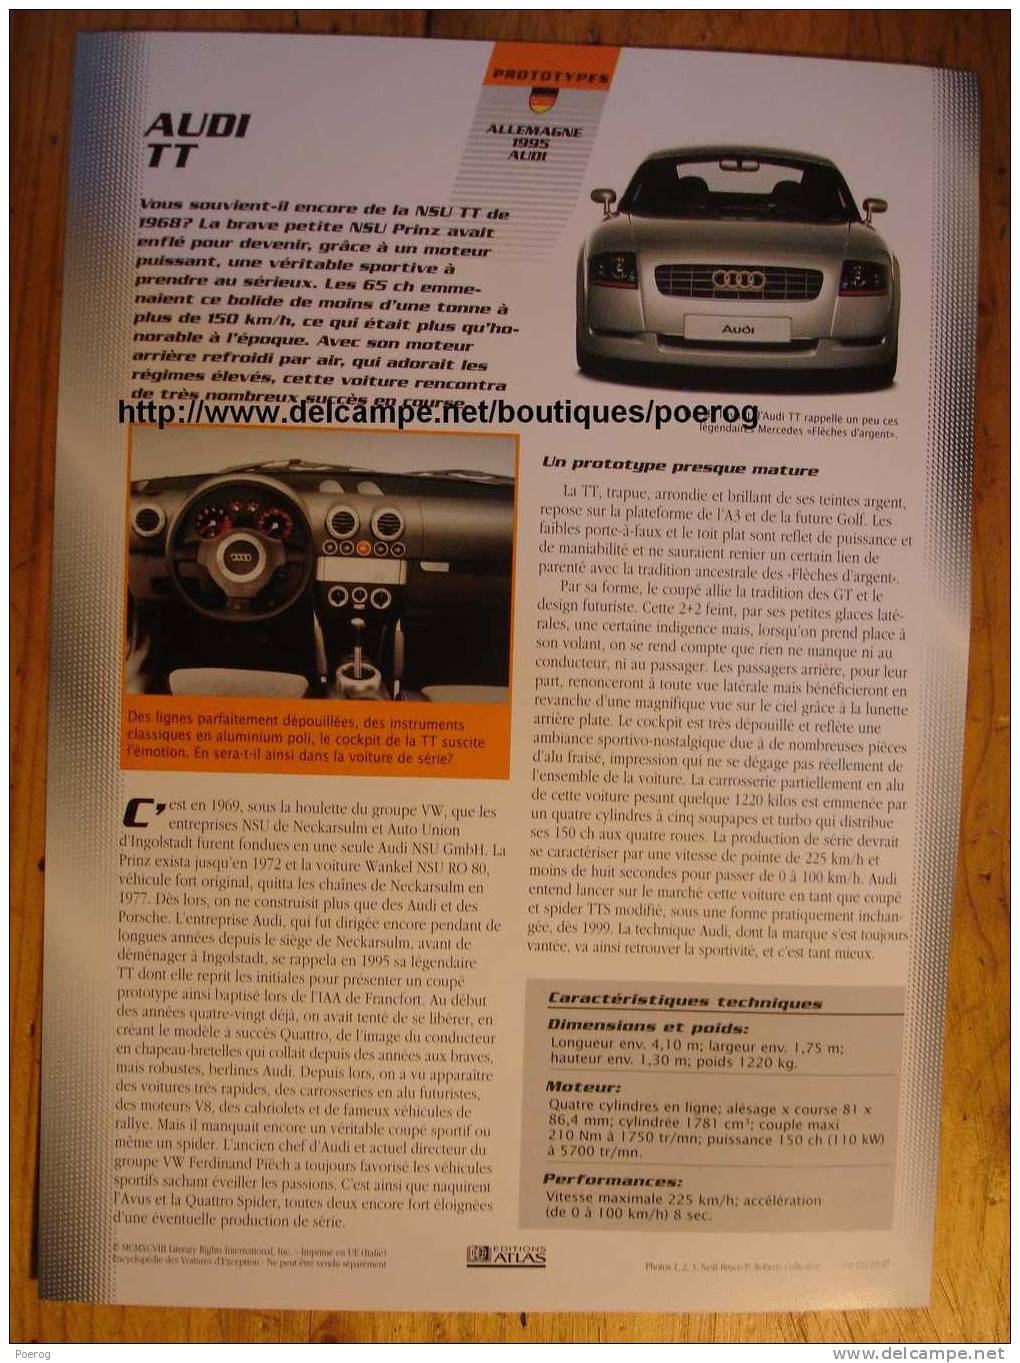 AUDI TT - FICHE VOITURE GRAND FORMAT (A4) - 1998 - Auto Automobile Automobiles Voitures Car Cars - Autos